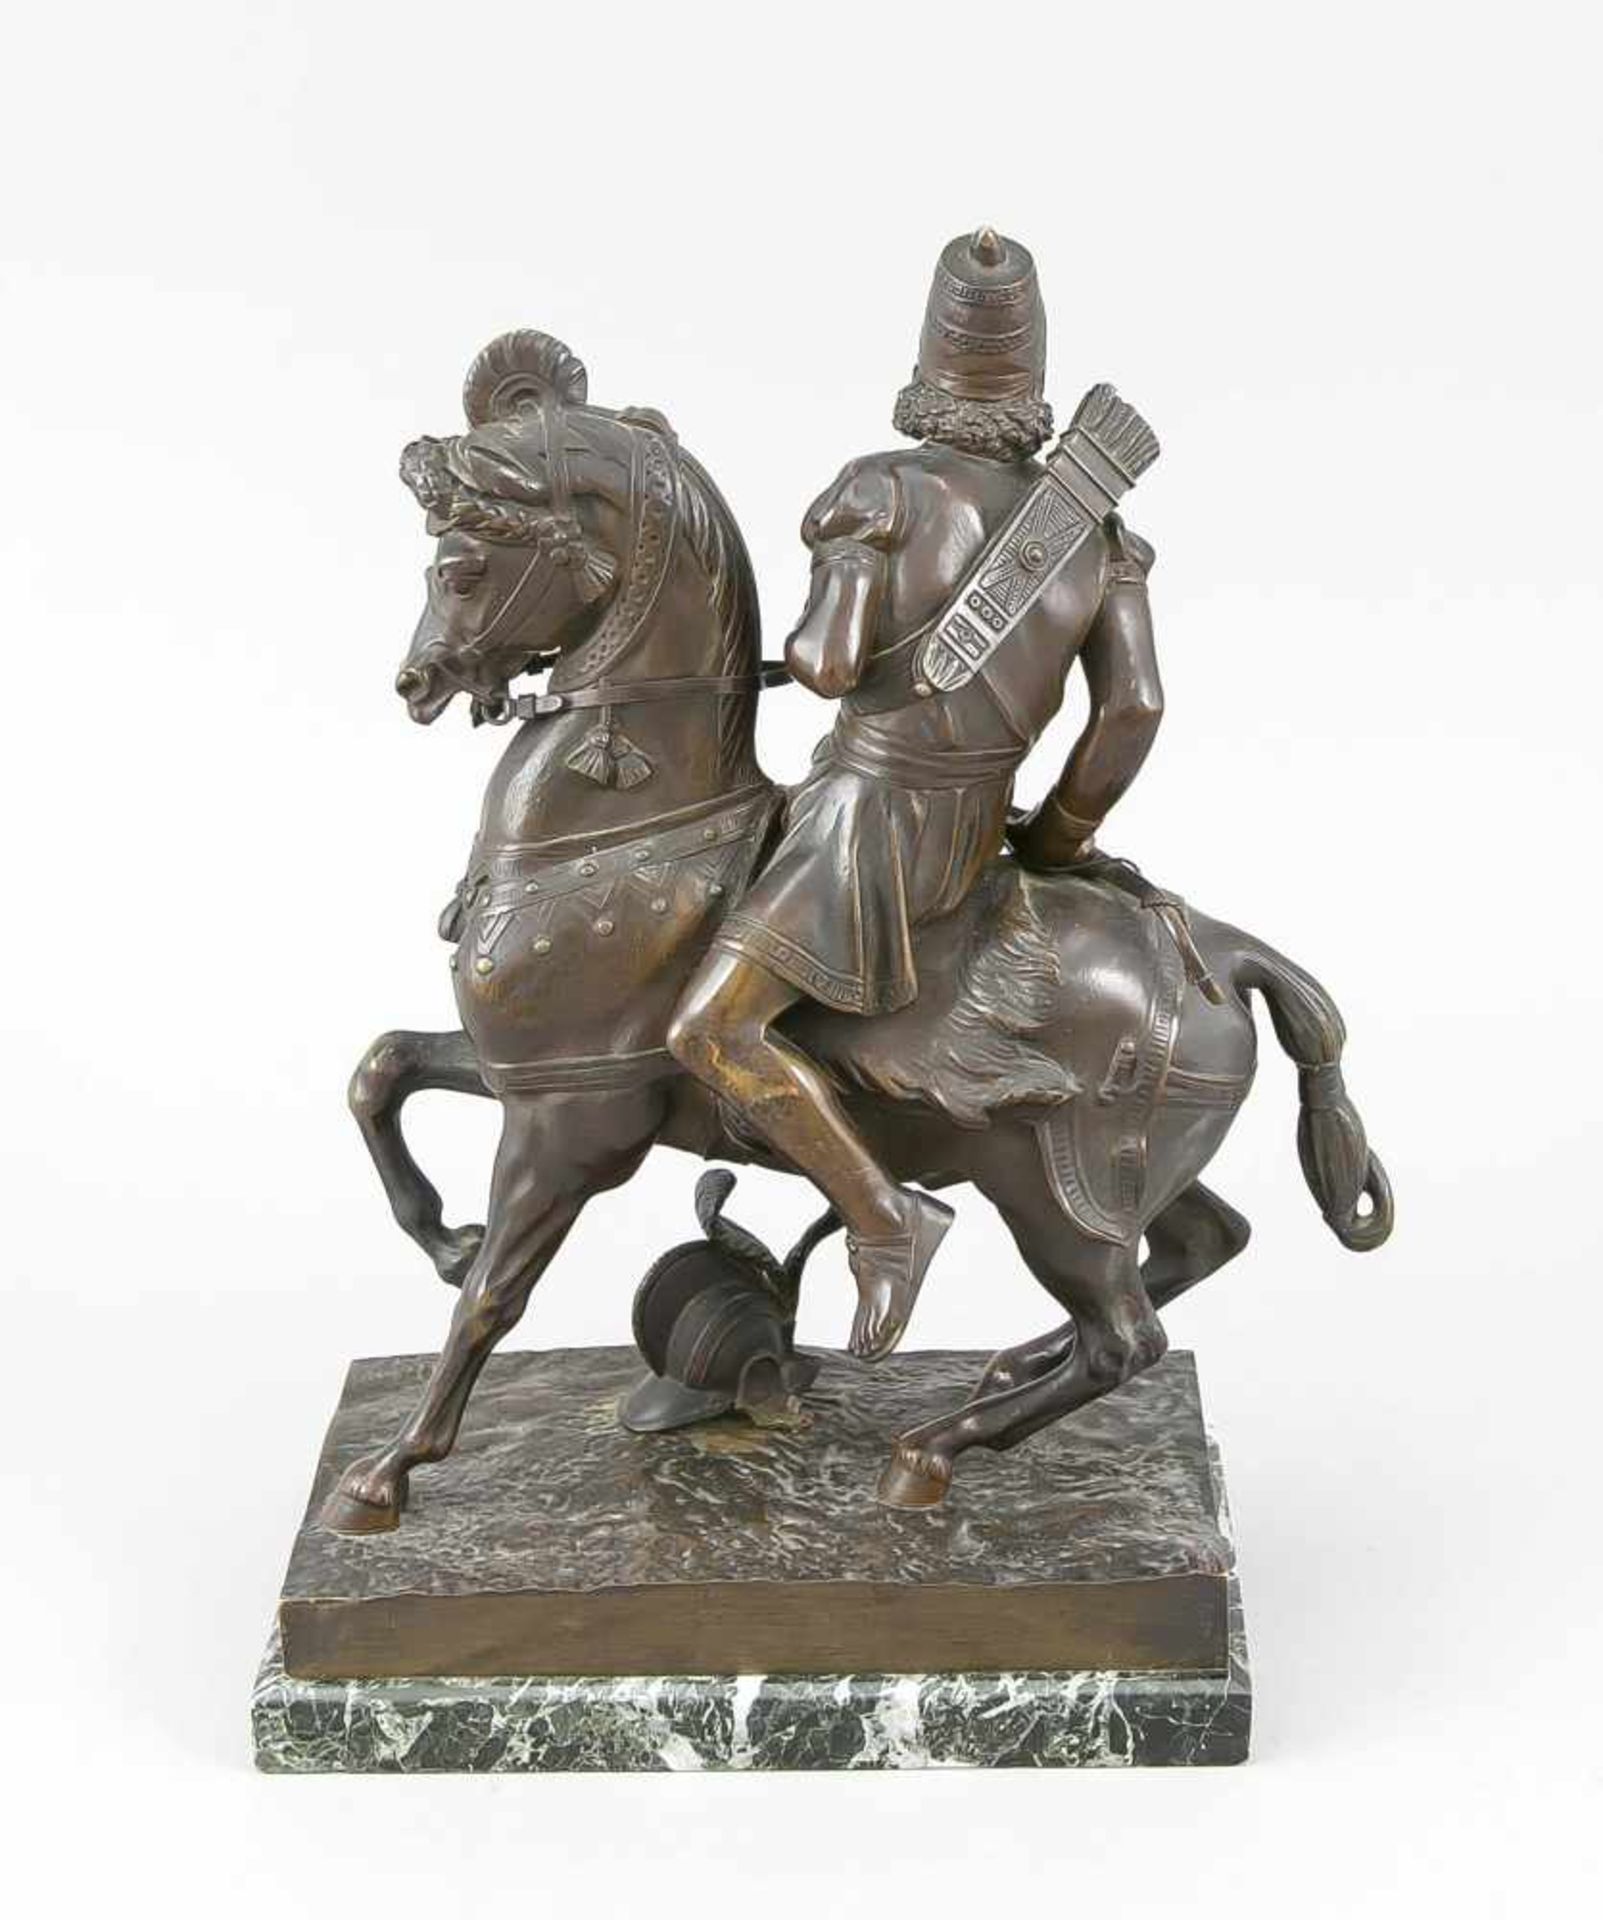 Arthur Stein (1880-?), altorientalischer Krieger mit Bogen auf reich geschmücktem Pferd,braun - Bild 2 aus 2